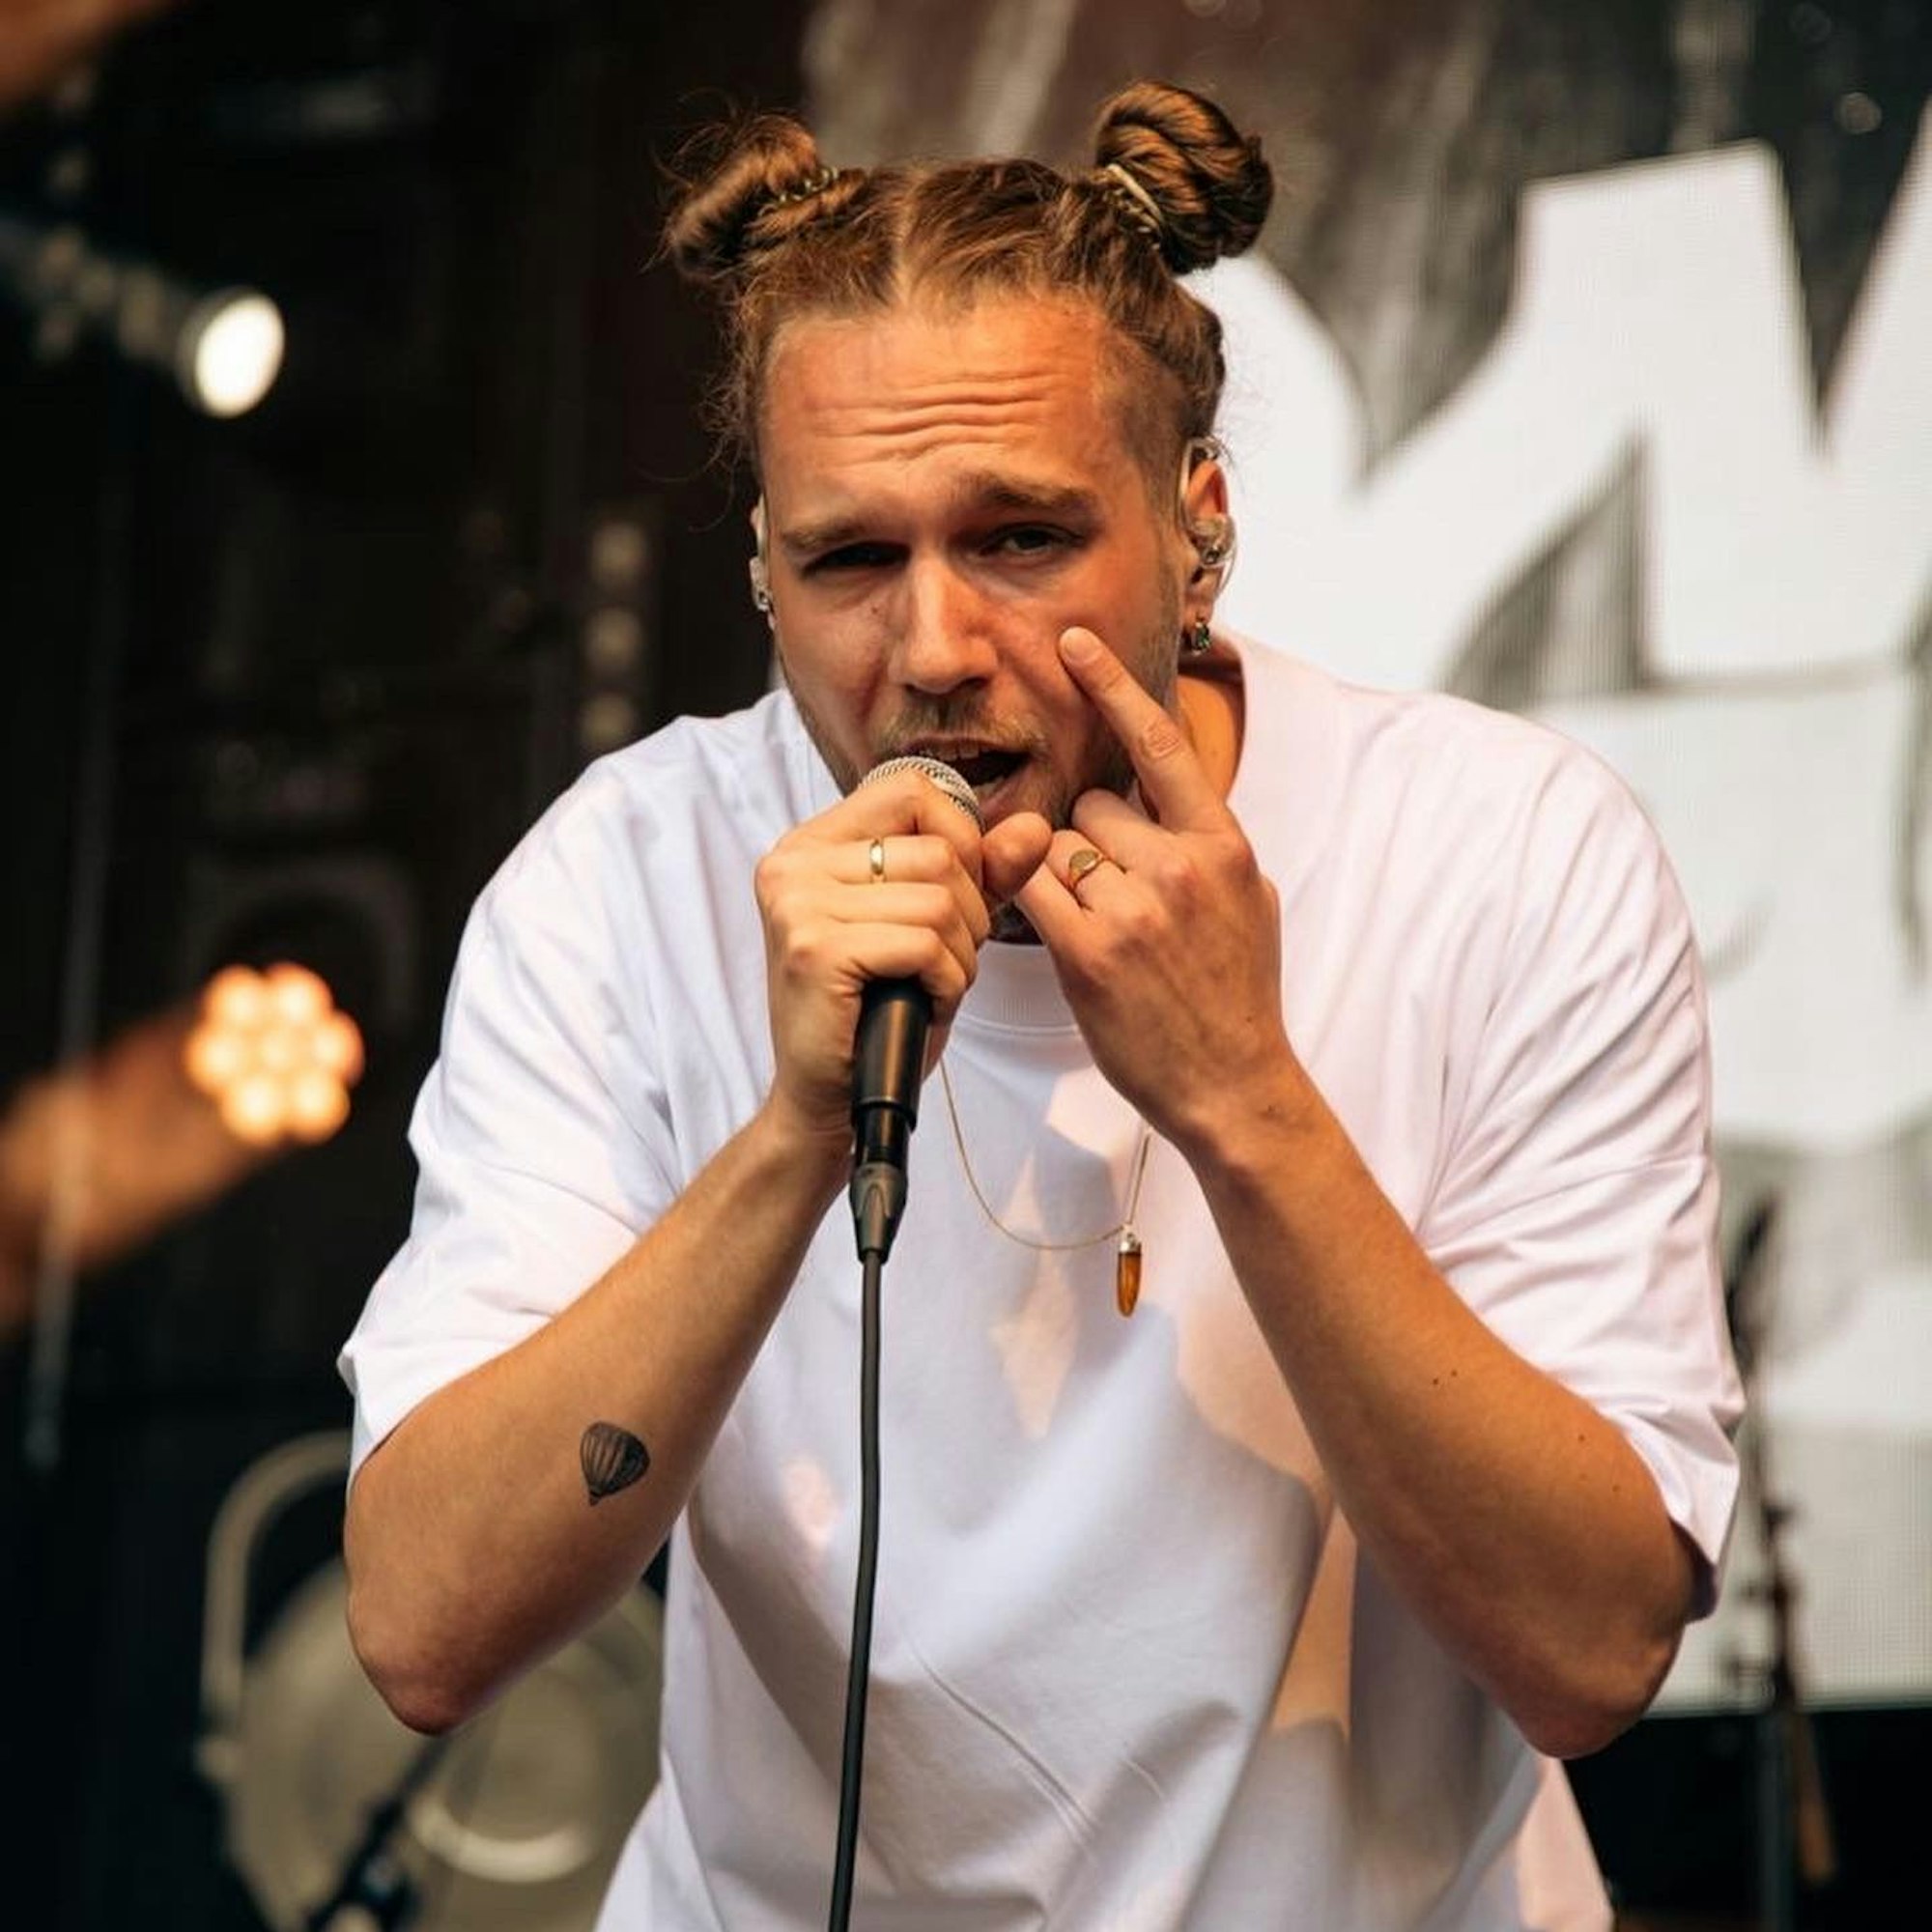 Sänger Wunso trägt ein weißes T-Shirt. Er steht auf einer Bühne und singt in ein Mikrofon, das er in der Hand hält.